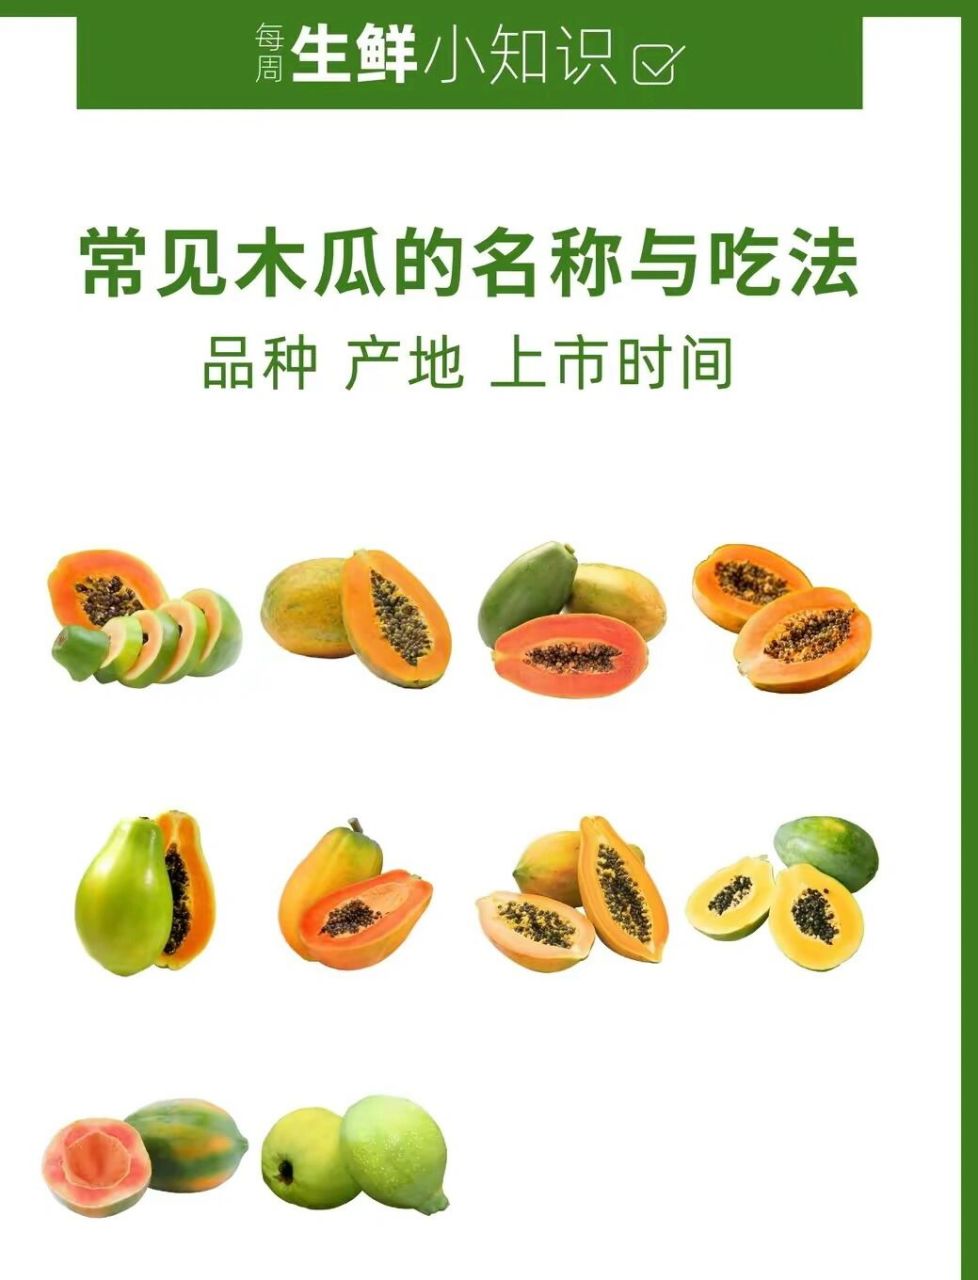 谊品整理了木瓜常见品种,一起来了解吧!